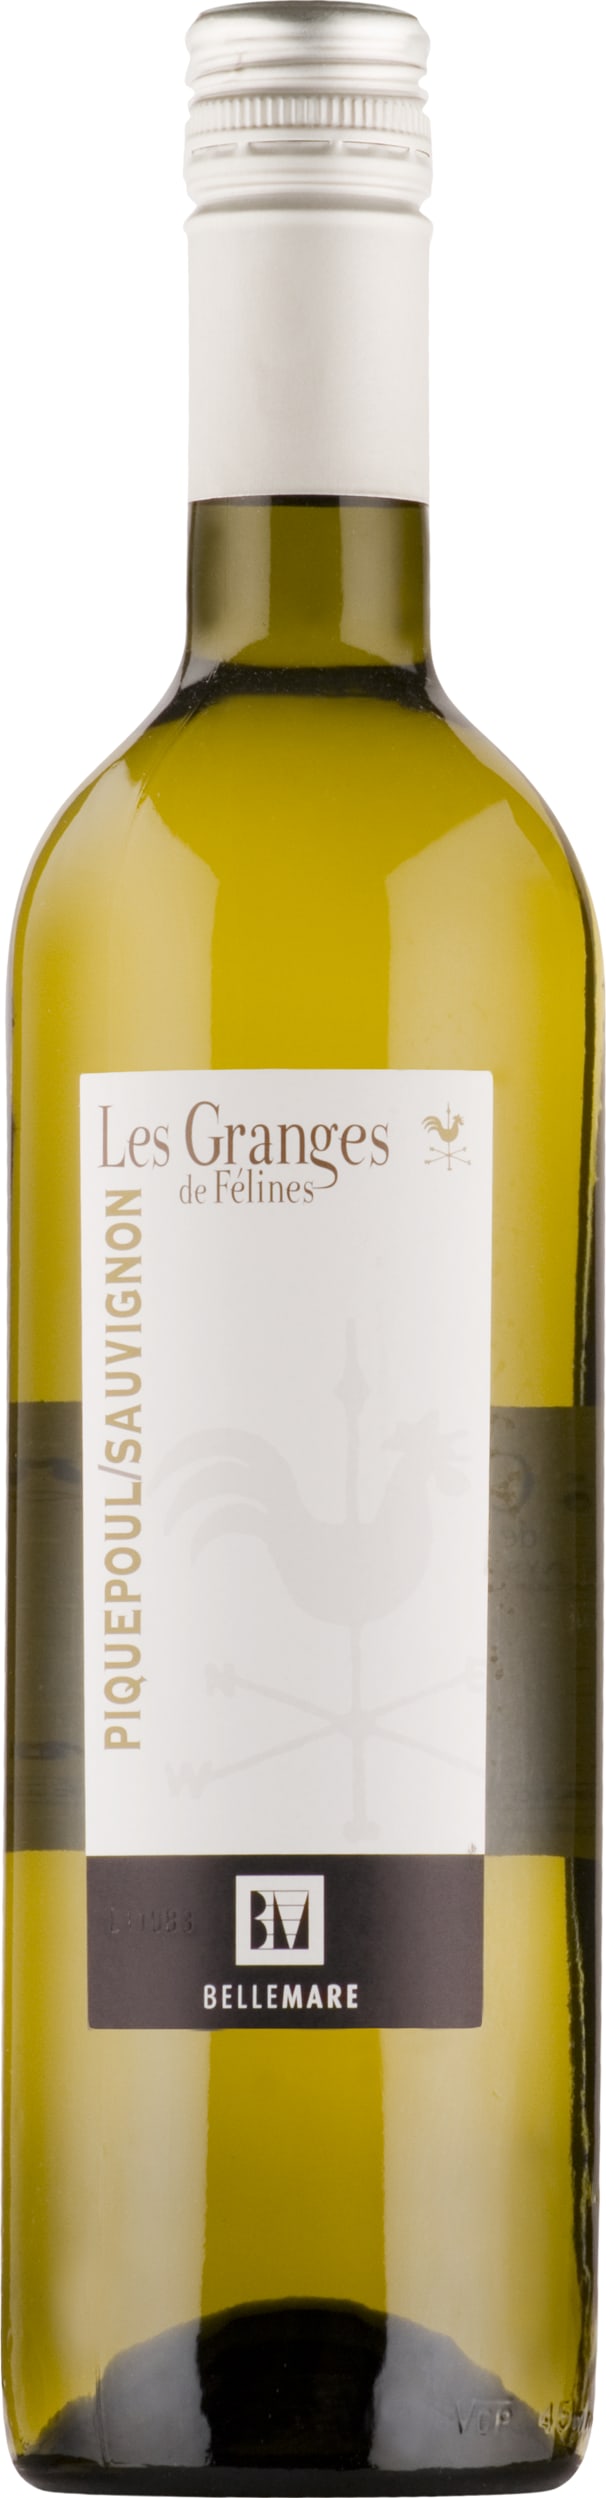 Domaine de Belle Mare Picpoul-Sauvignon, Les Granges de Felines 2022 75cl - Buy Domaine de Belle Mare Wines from GREAT WINES DIRECT wine shop